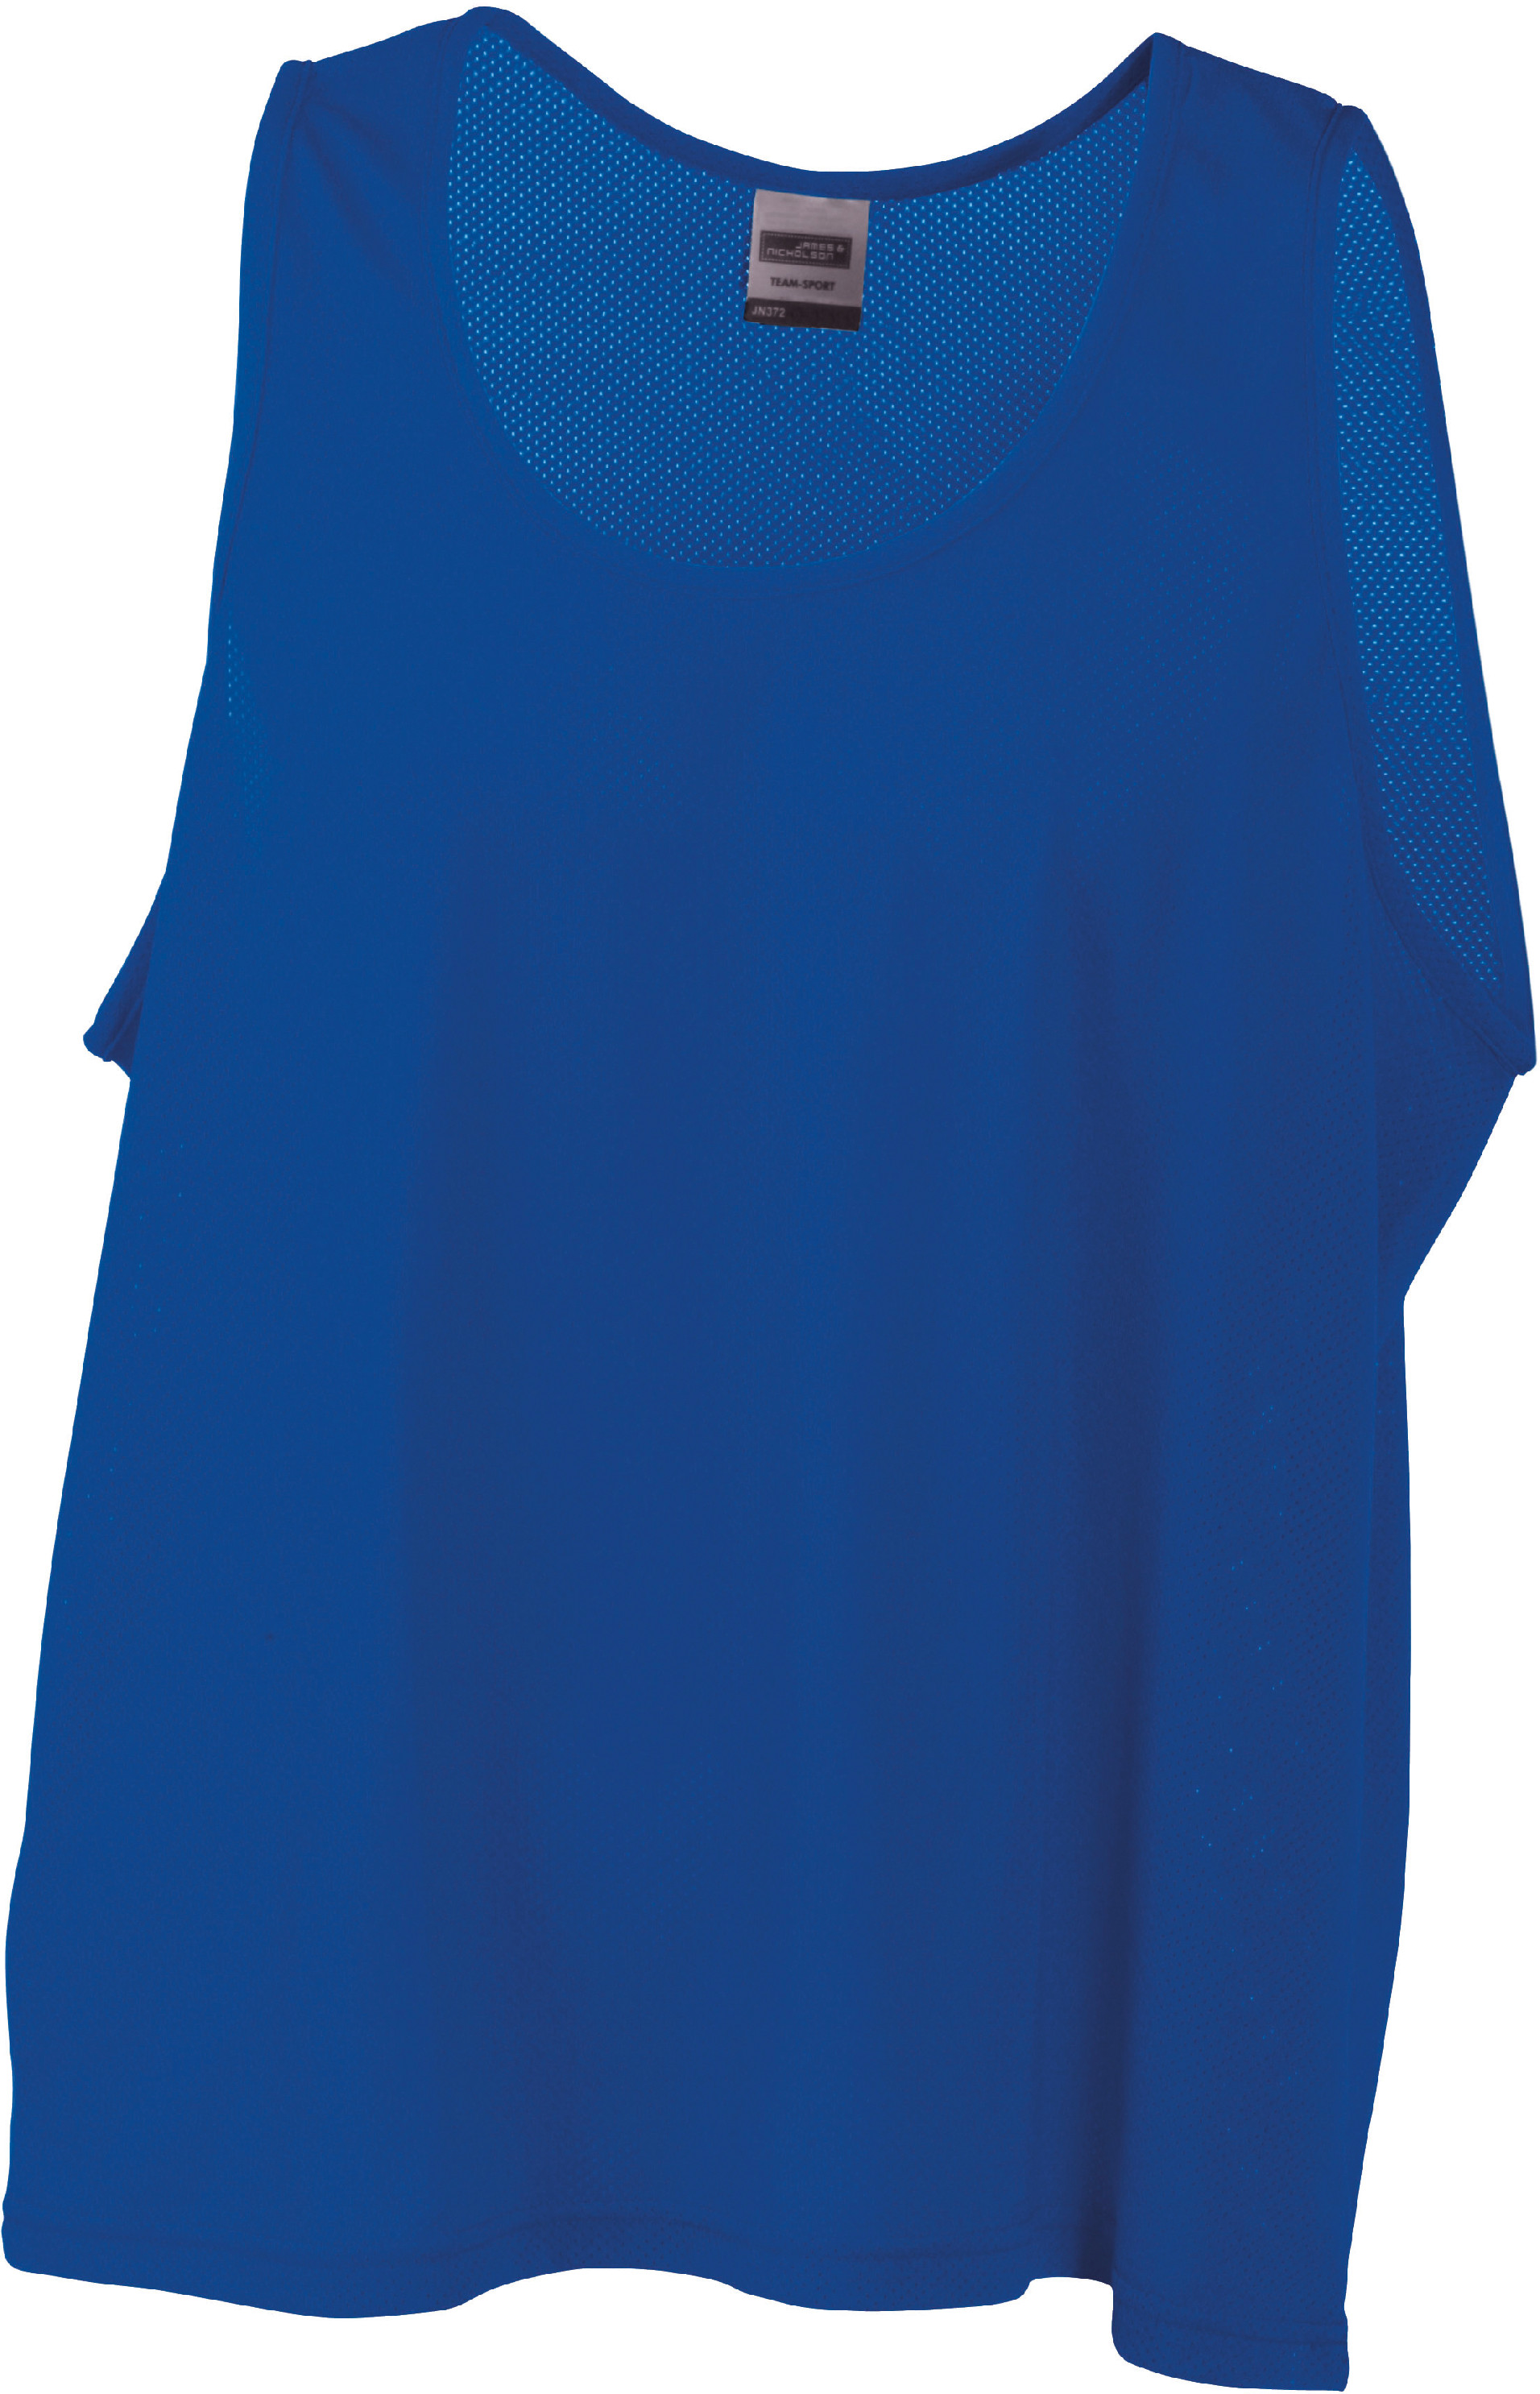 Týmový rozlišovací dres JN 372 Barva: královská modrá, Velikost: L